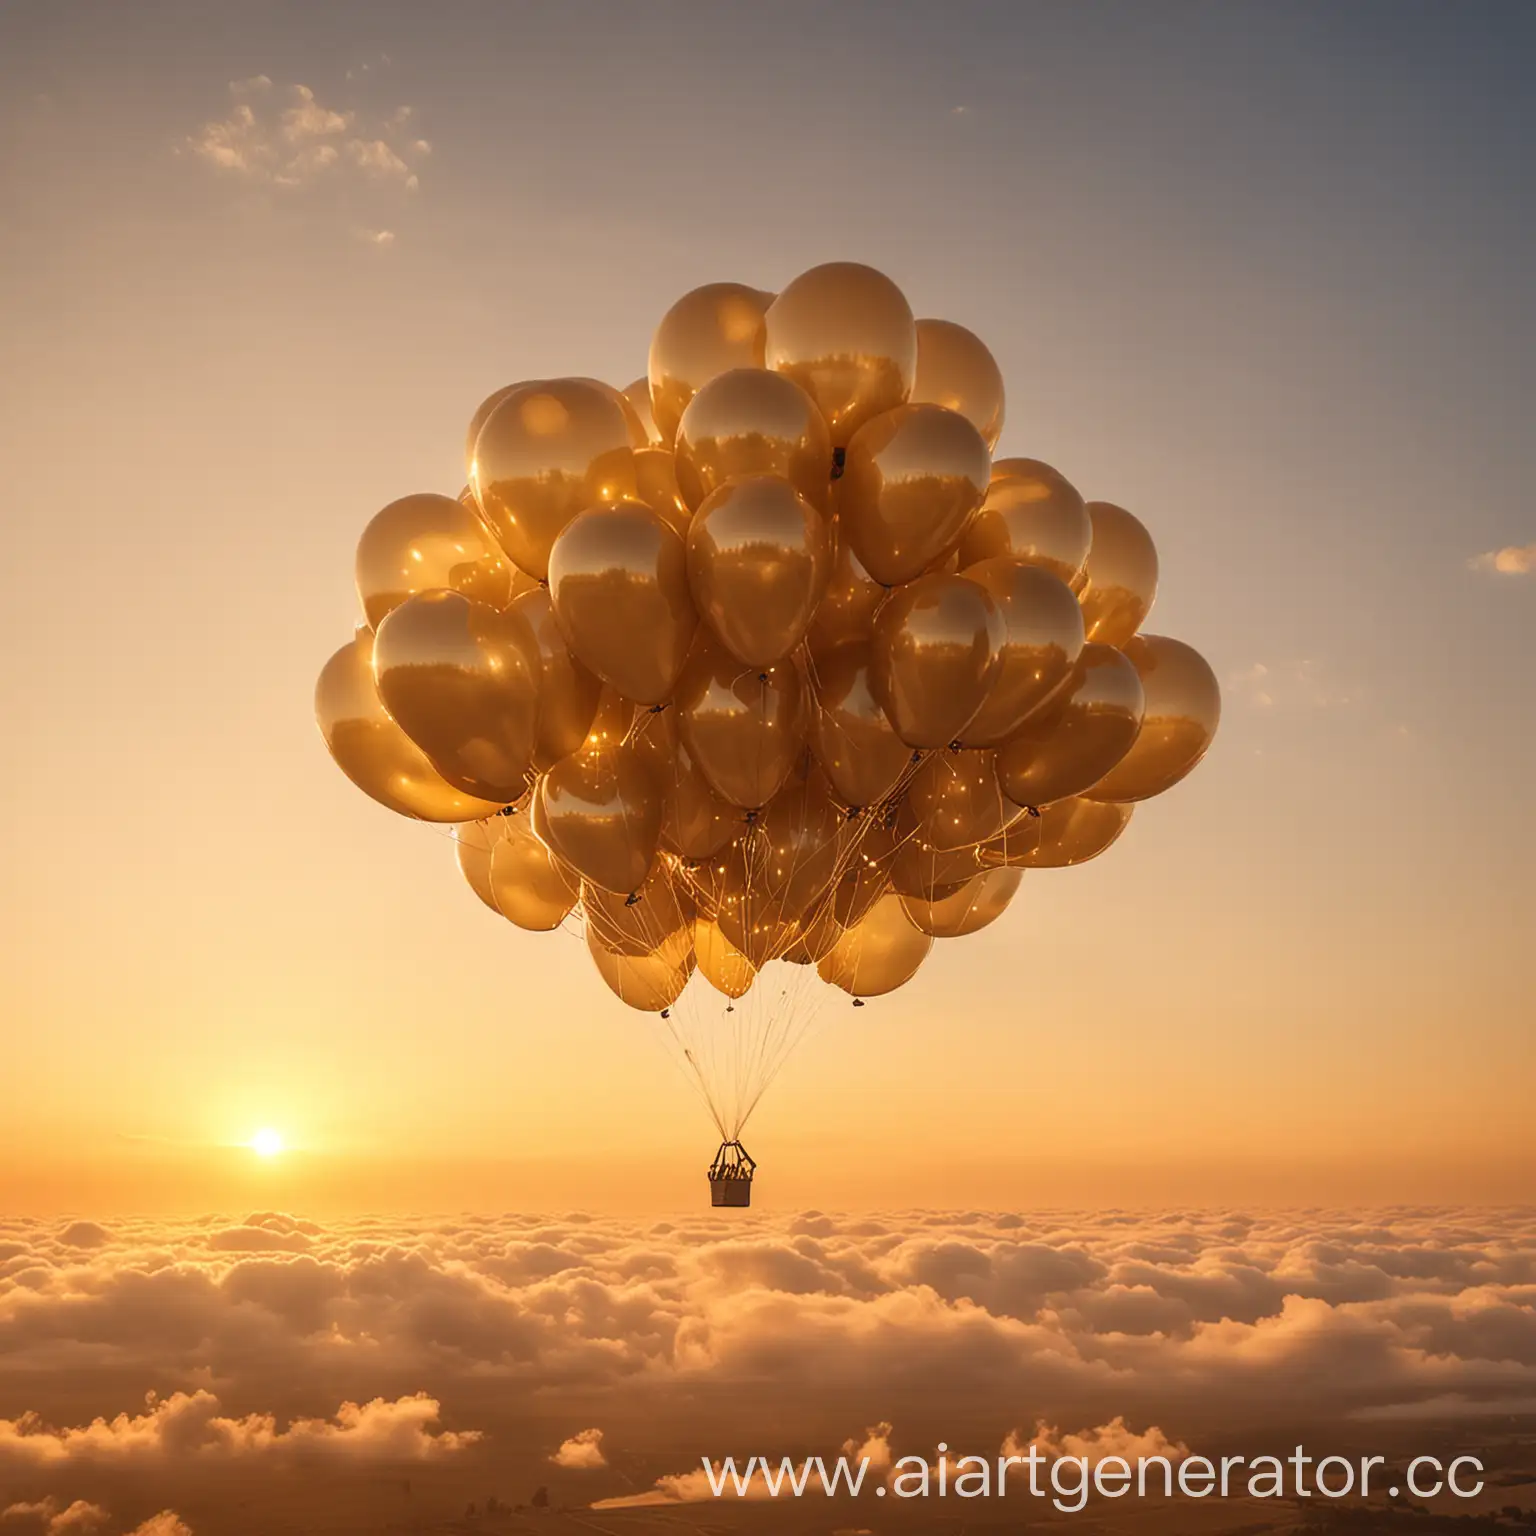 связка гелевых воздушных шариков в форме облака, с золотой дымкой, на фоне неба, закатные нежные золотые лучи. нежная картинка, уютная картинка